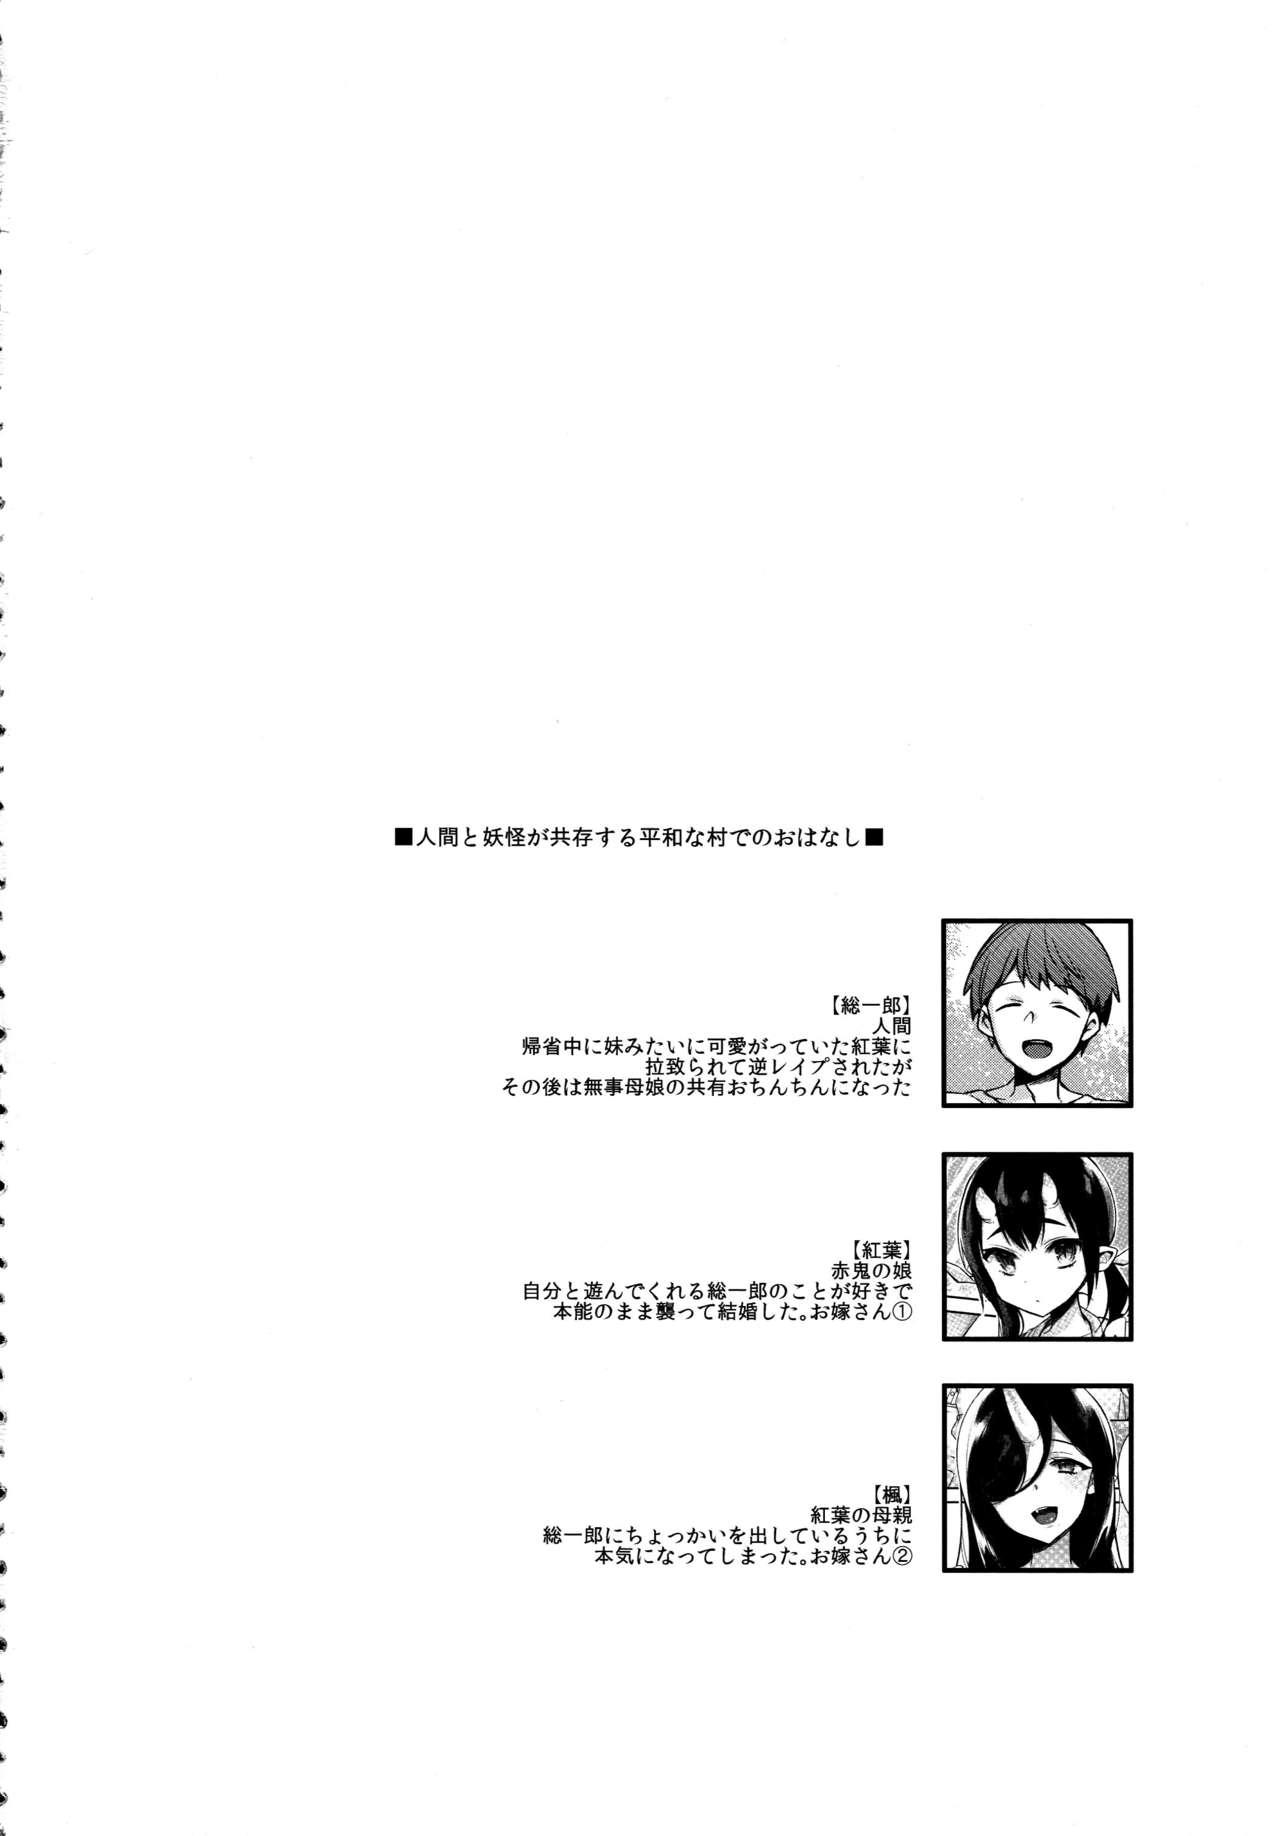 Gros Seins Oni no Shimai wa Hito no Osu to Kozukuri ga Shitai - Original Point Of View - Page 5